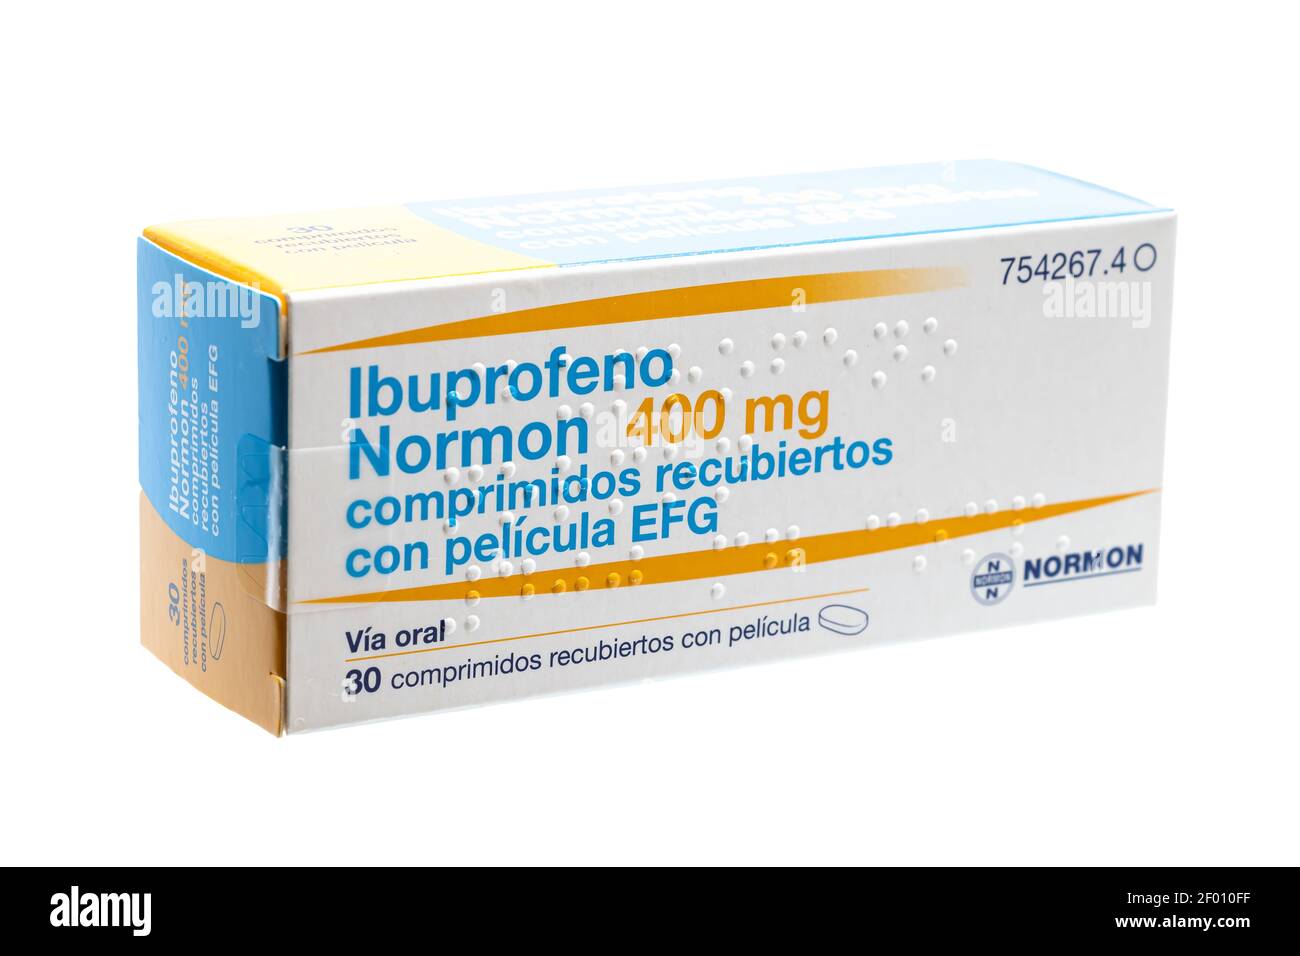 Huelva, Spagna - 6 marzo 2021: Scatola spagnola di Ibuprofen, è un farmaco antinfiammatorio farmaco. Usato per dolore, febbre e infiammazione, menst dolorosa Foto Stock